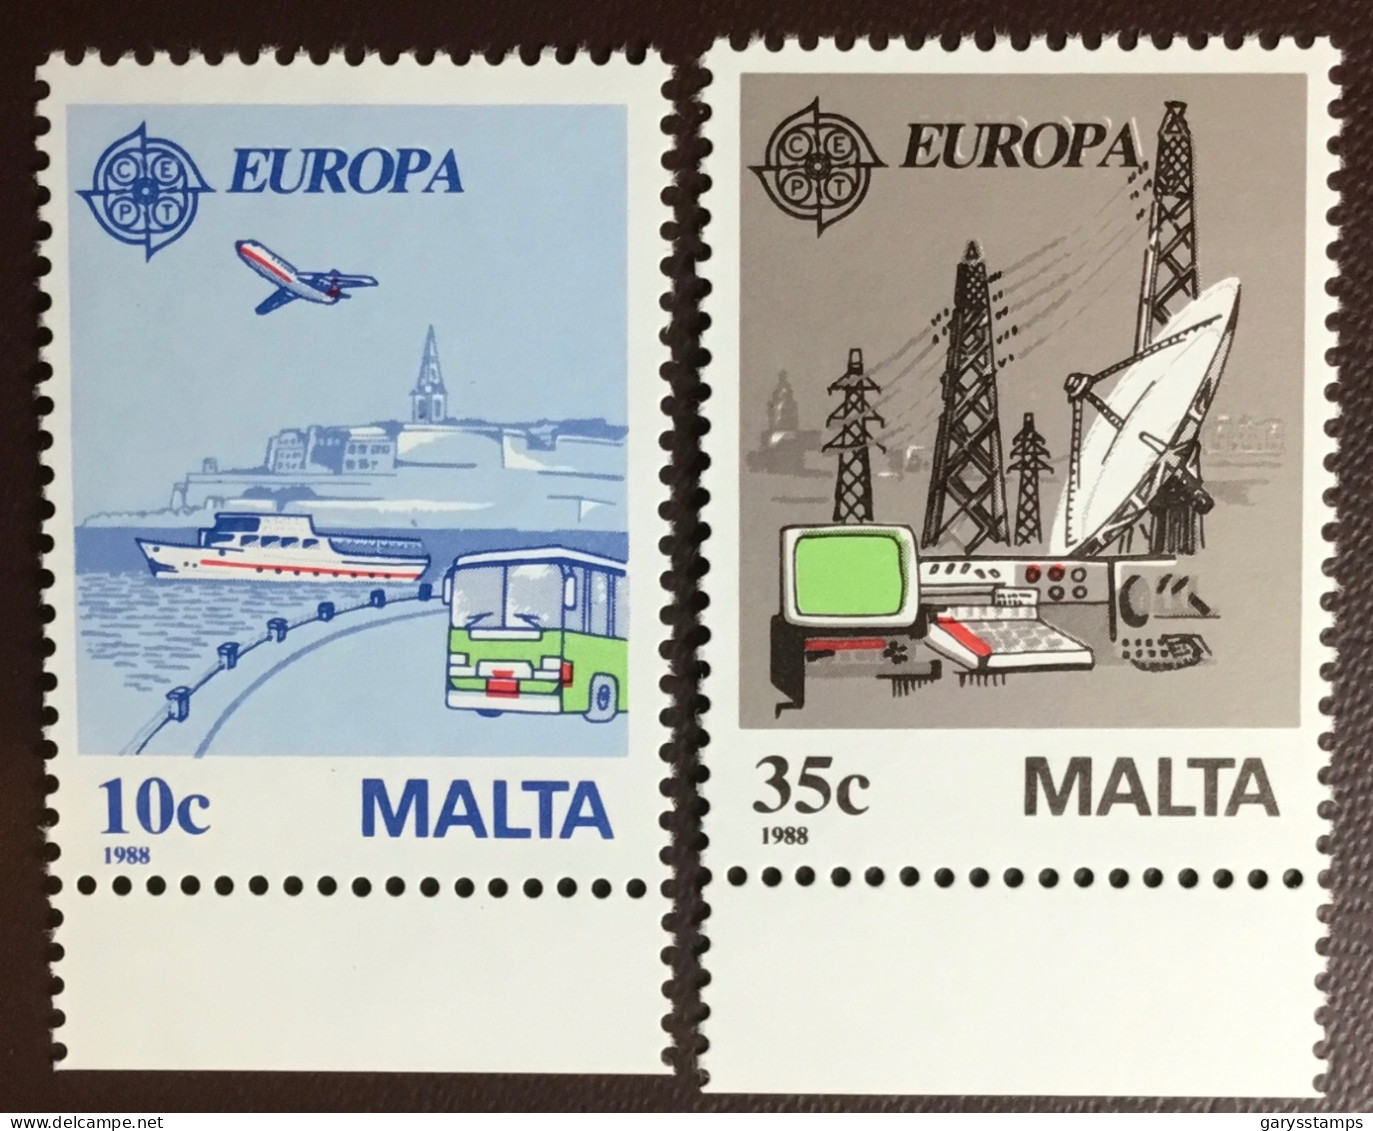 Malta 1988 Europa MNH - Malta